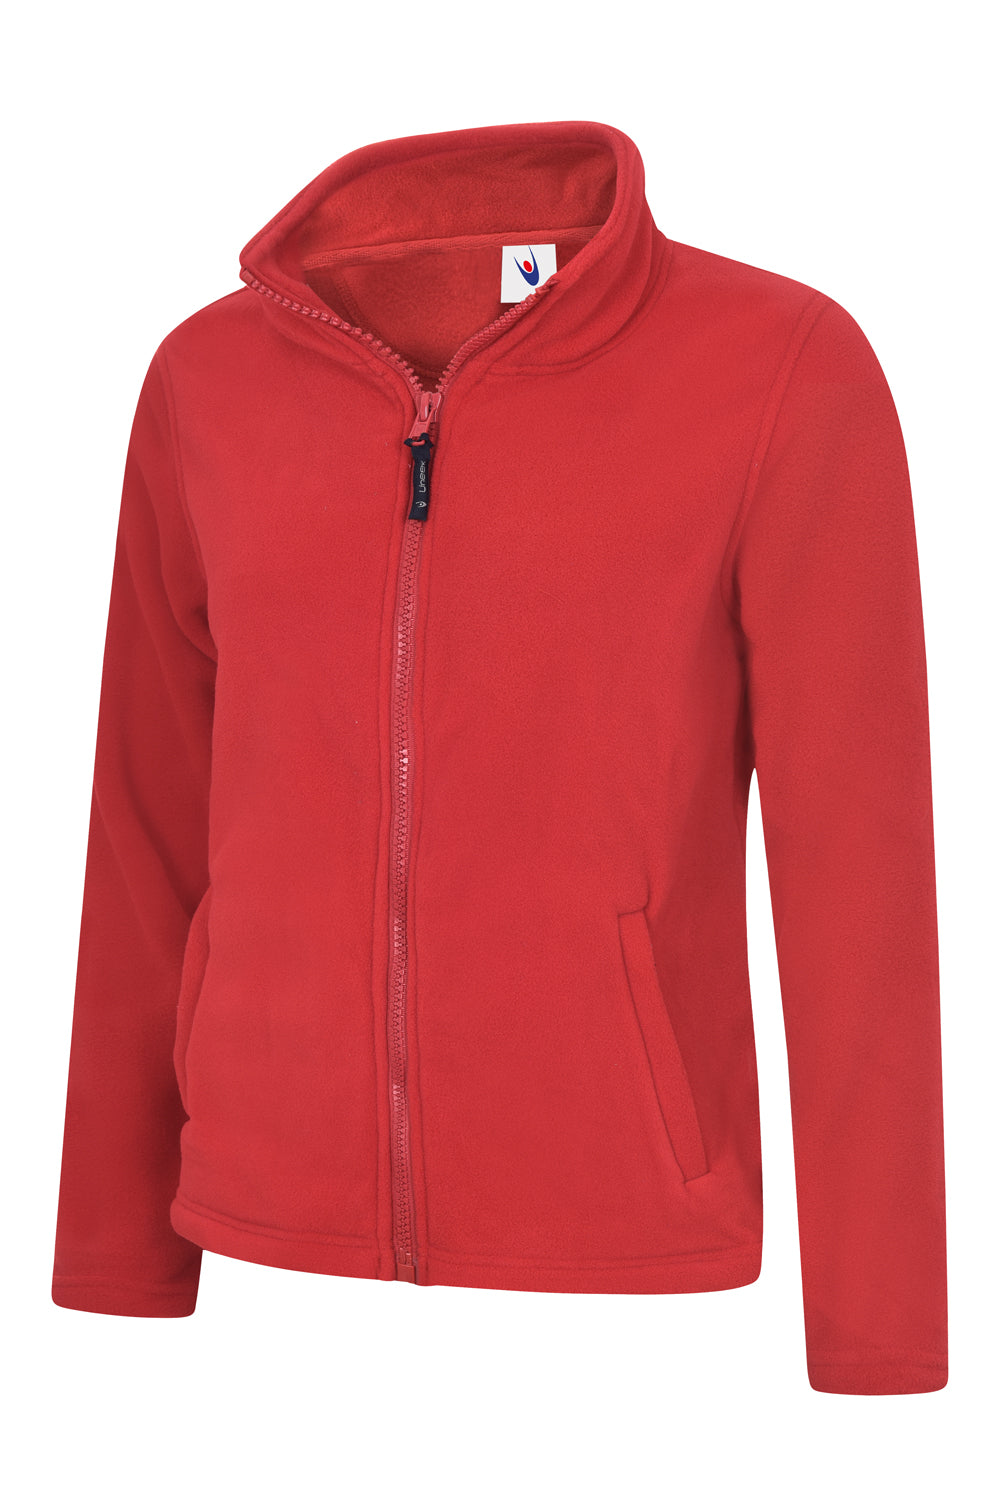 Uneek Ladies Classic Full Zip Fleece Jacket UC608 - Red